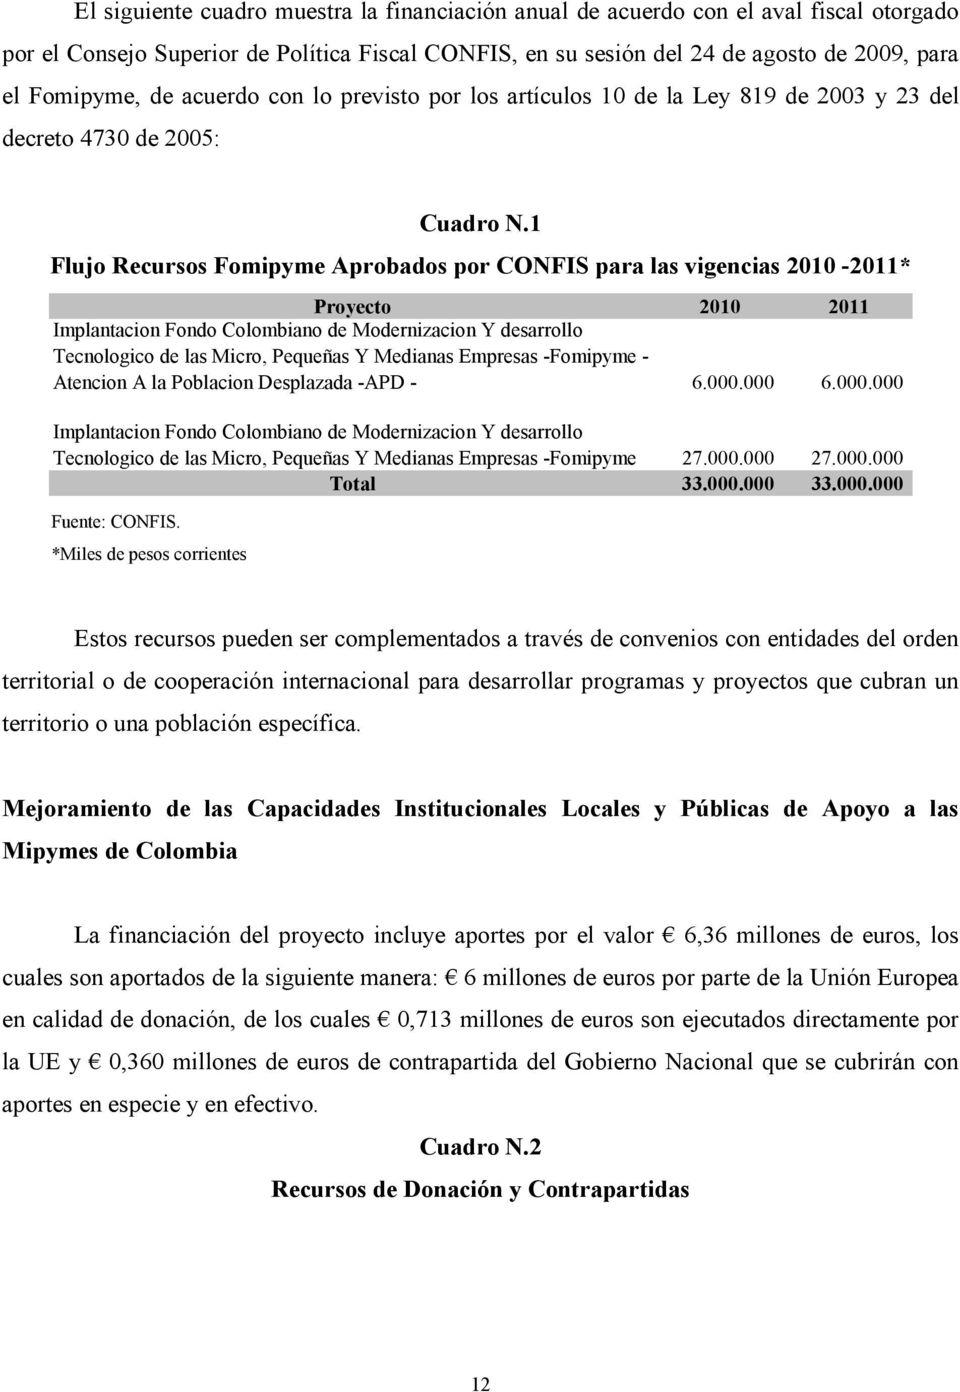 1 Flujo Recursos Fomipyme Aprobados por CONFIS para las vigencias 2010-2011* Proyecto 2010 2011 Implantacion Fondo Colombiano de Modernizacion Y desarrollo Tecnologico de las Micro, Pequeñas Y